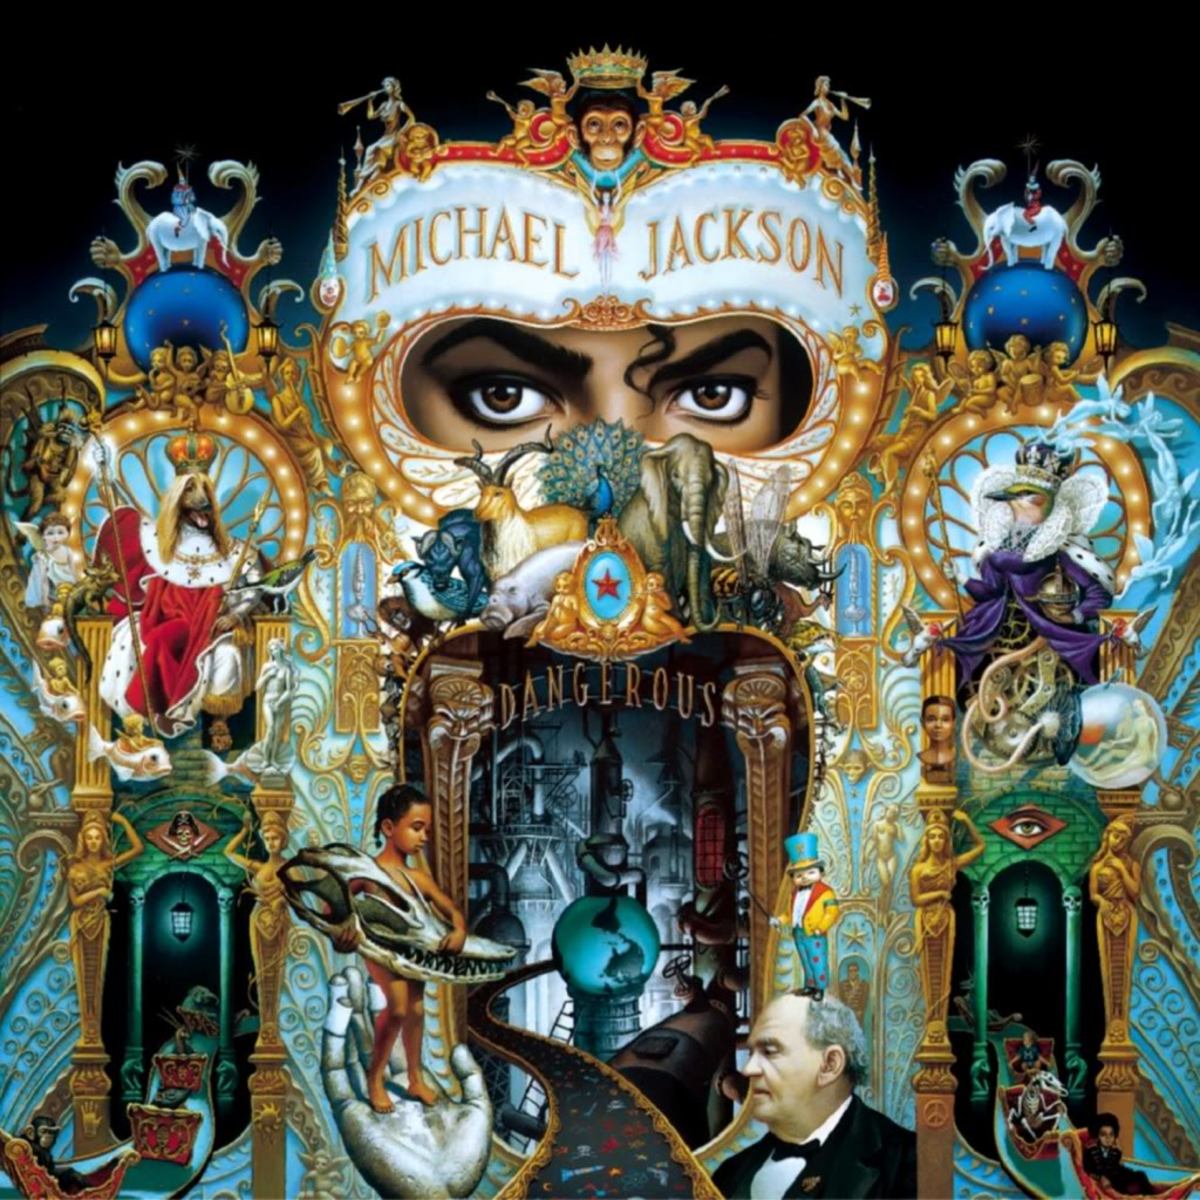 Michael Jackson's Dangerous